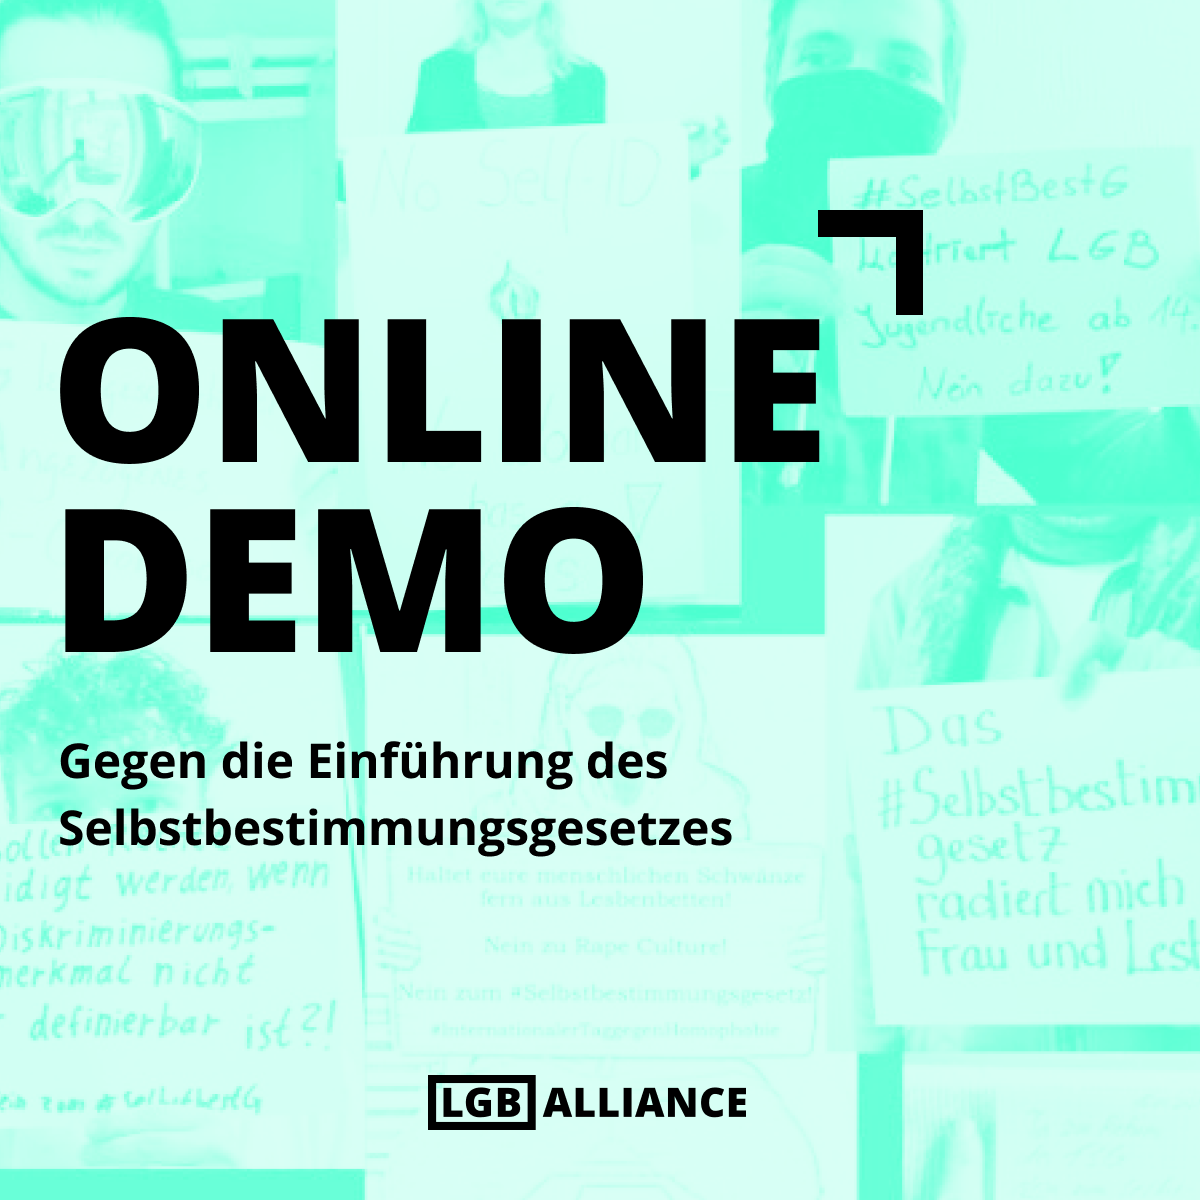 Online-Demo gegen die Einführung des Selbstbestimmungsgesetzes